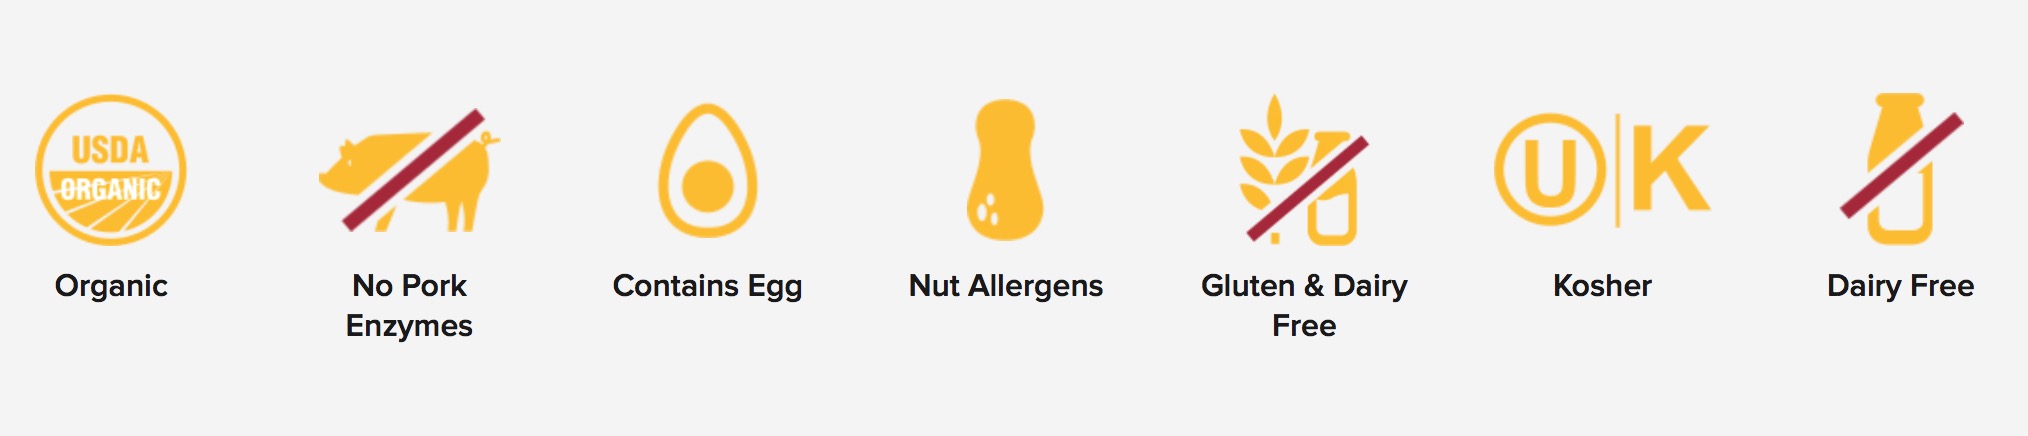 Frito Lay Website allergen filter